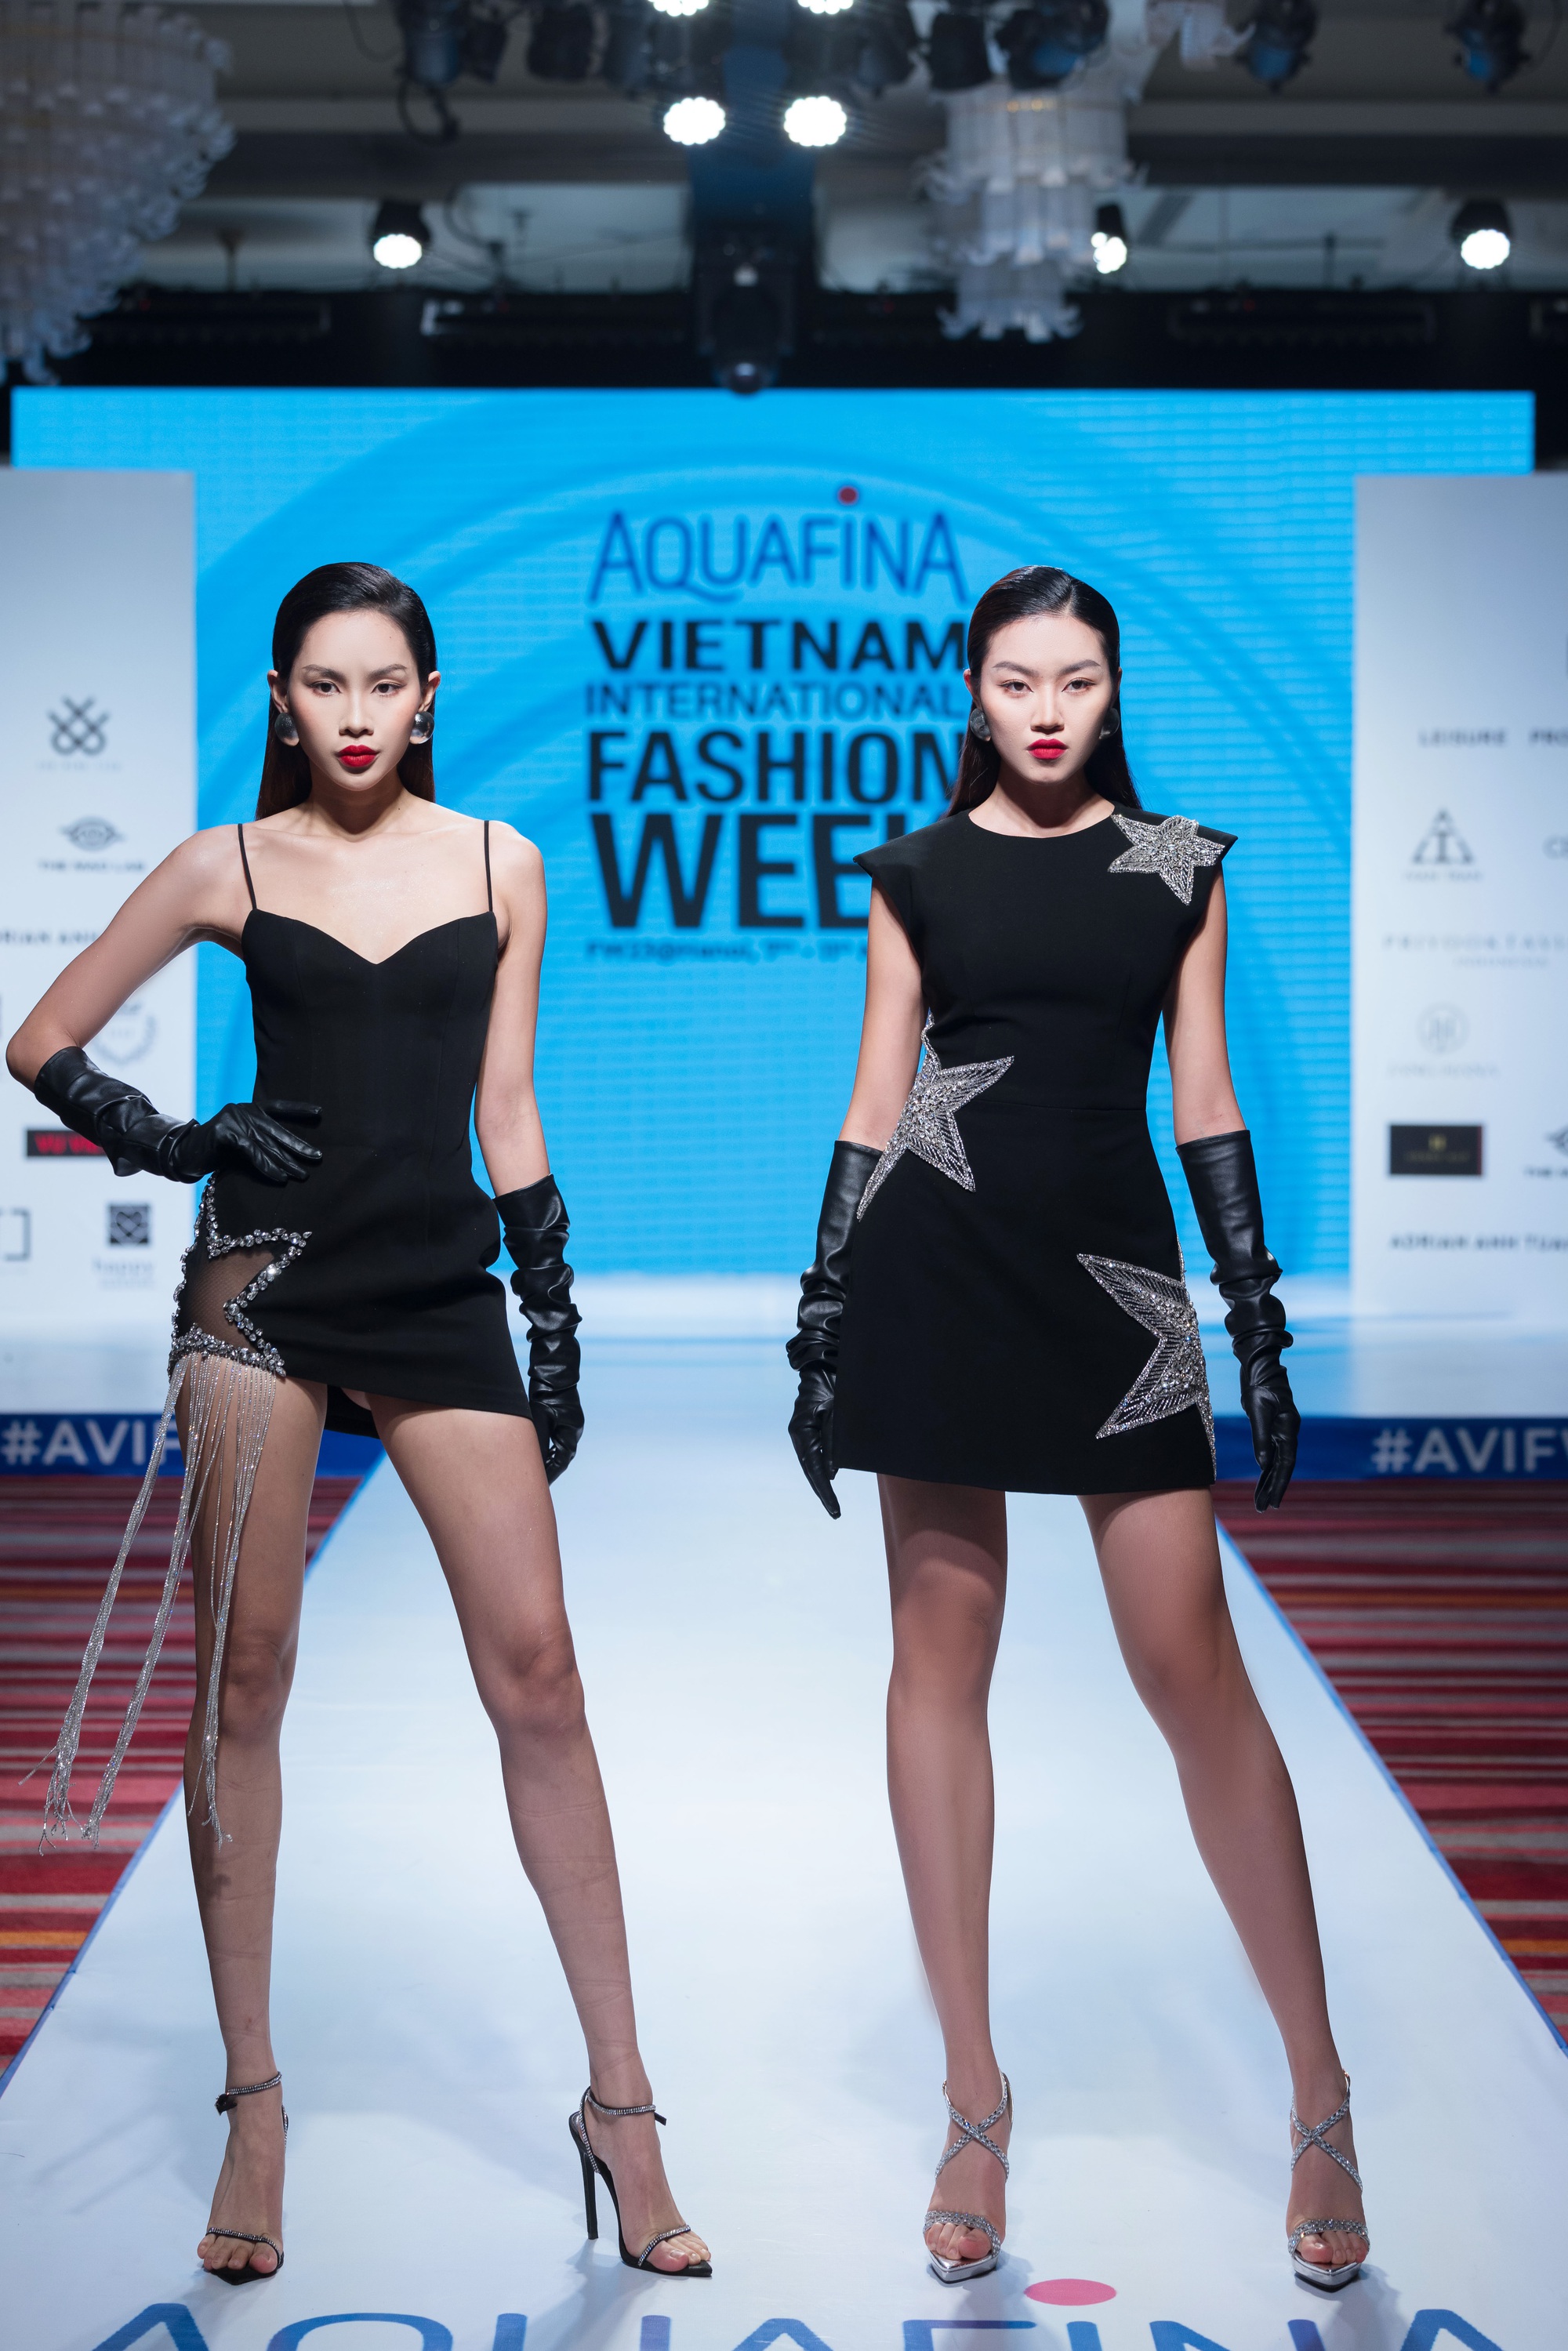 16 nhà thiết kế, thương hiệu sẽ tham dự Aquafina Tuần lễ thời trang Quốc tế Việt Nam - Ảnh 8.